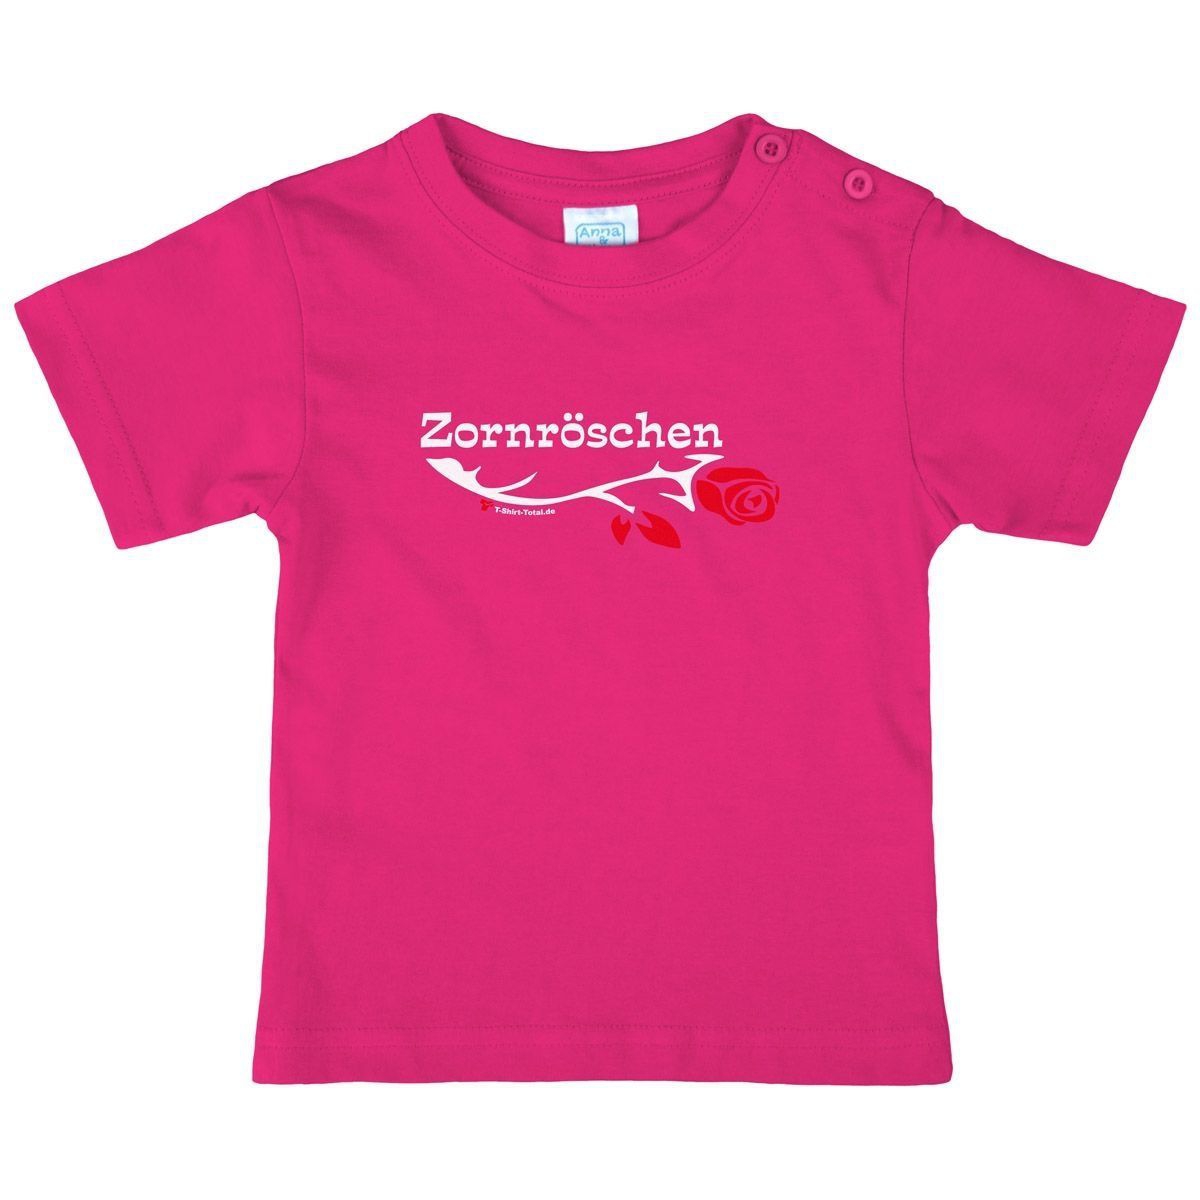 Zornröschen Kinder T-Shirt pink 80 / 86